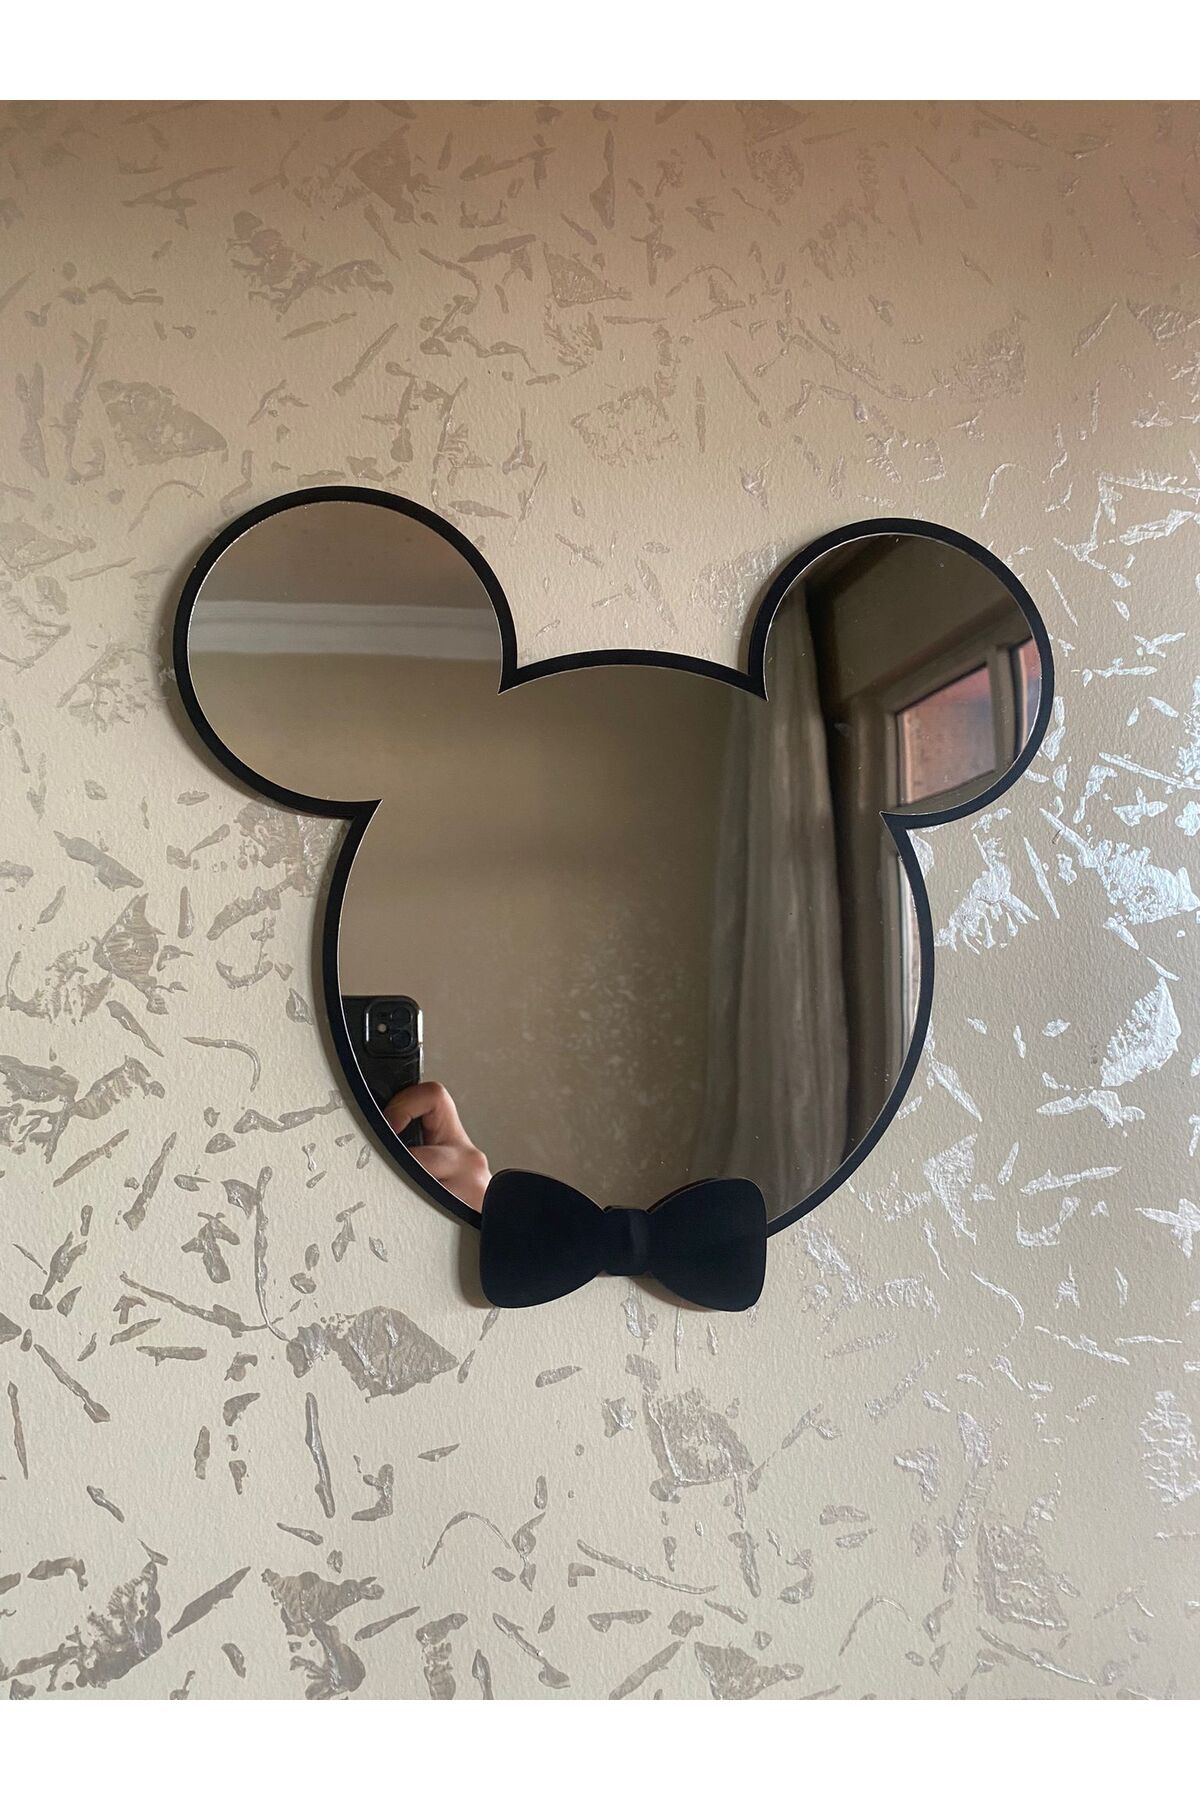 Olur o zaman Mickey Mouse Figürlü Çocuk Odası Dekoratif Ayna